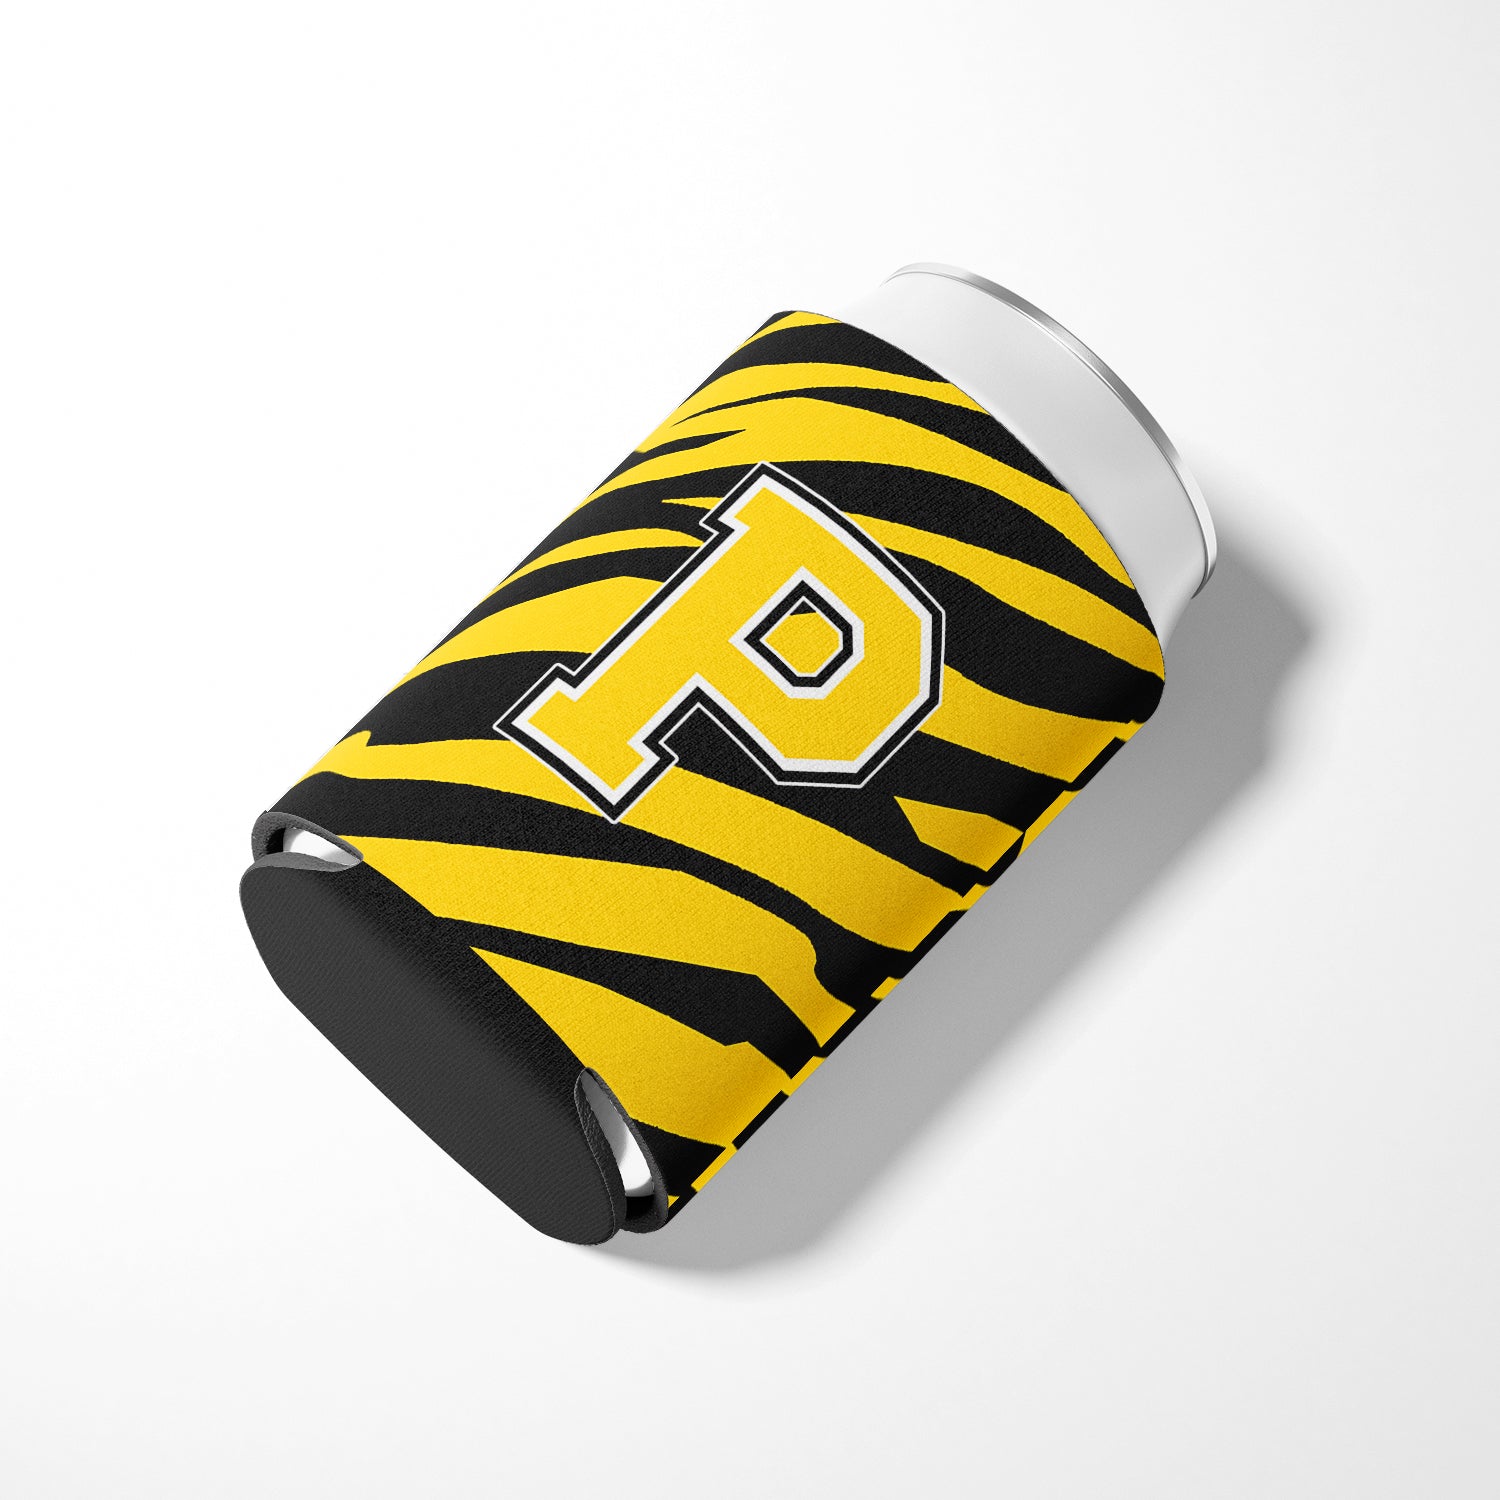 Letter P Initial Monogram - Tiger Stripe - Black Gold Can Beverage Insulator Hugger.